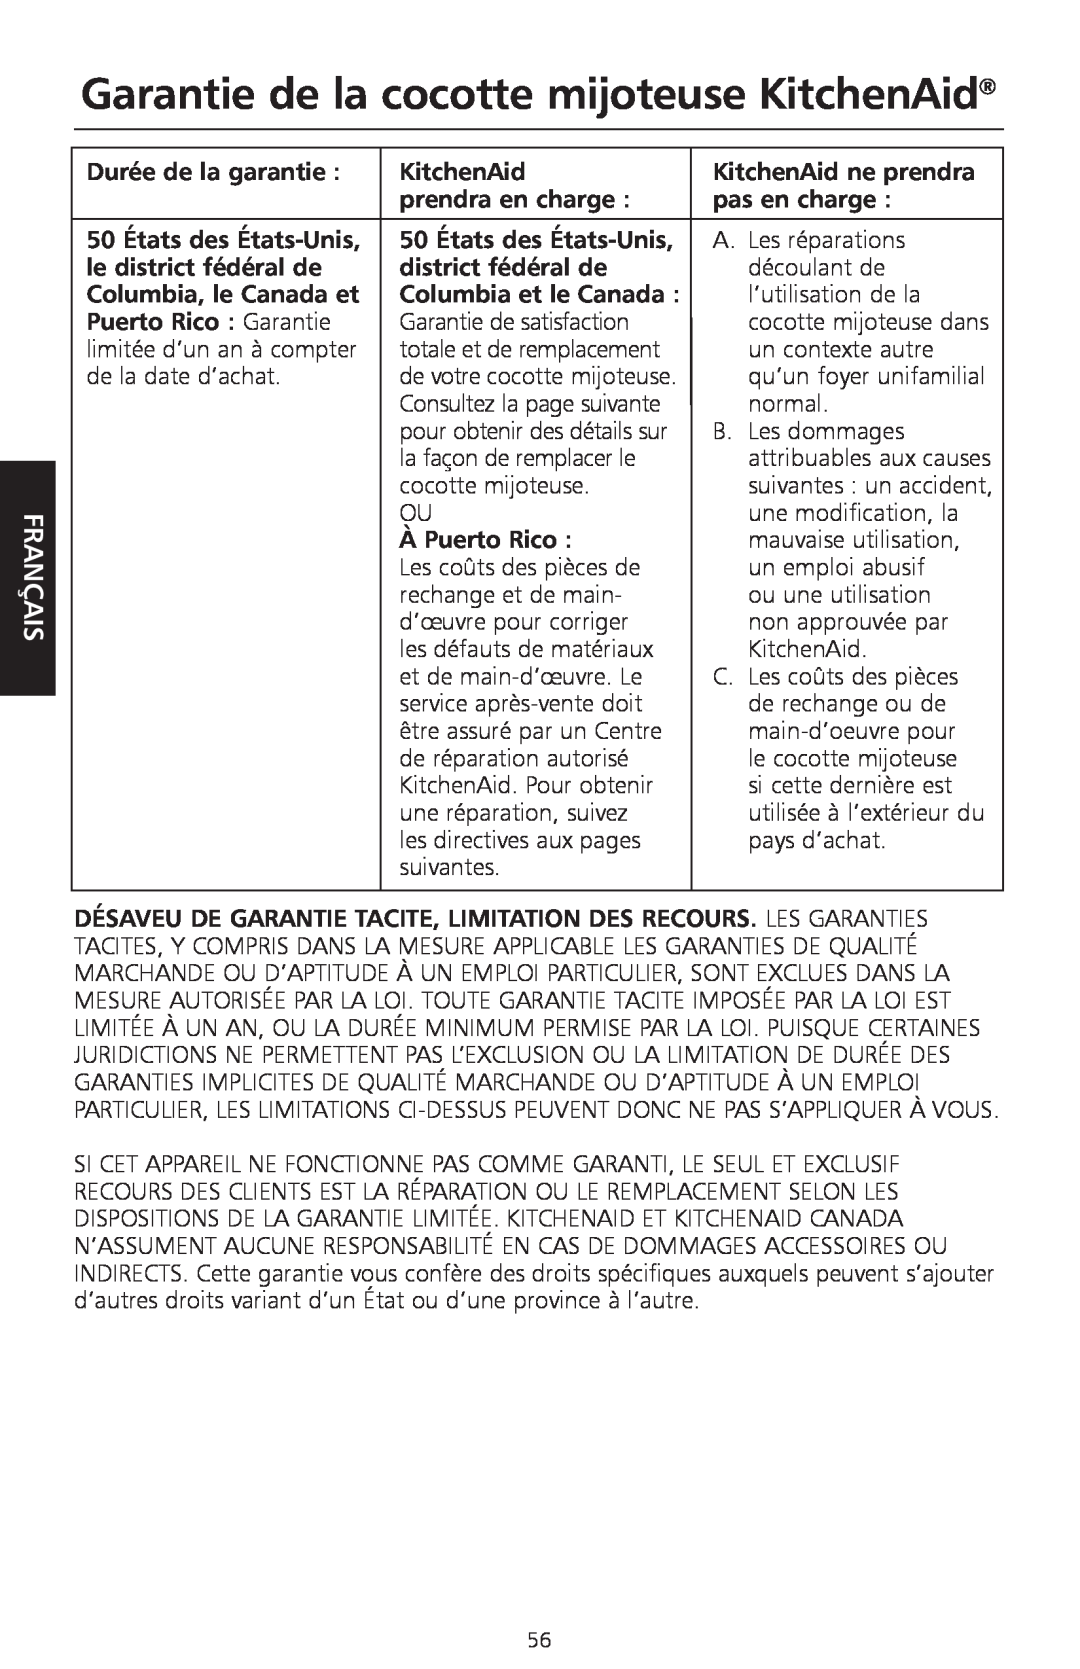 KitchenAid KSC700 manual Garantie de la cocotte mijoteuse KitchenAid, Français 